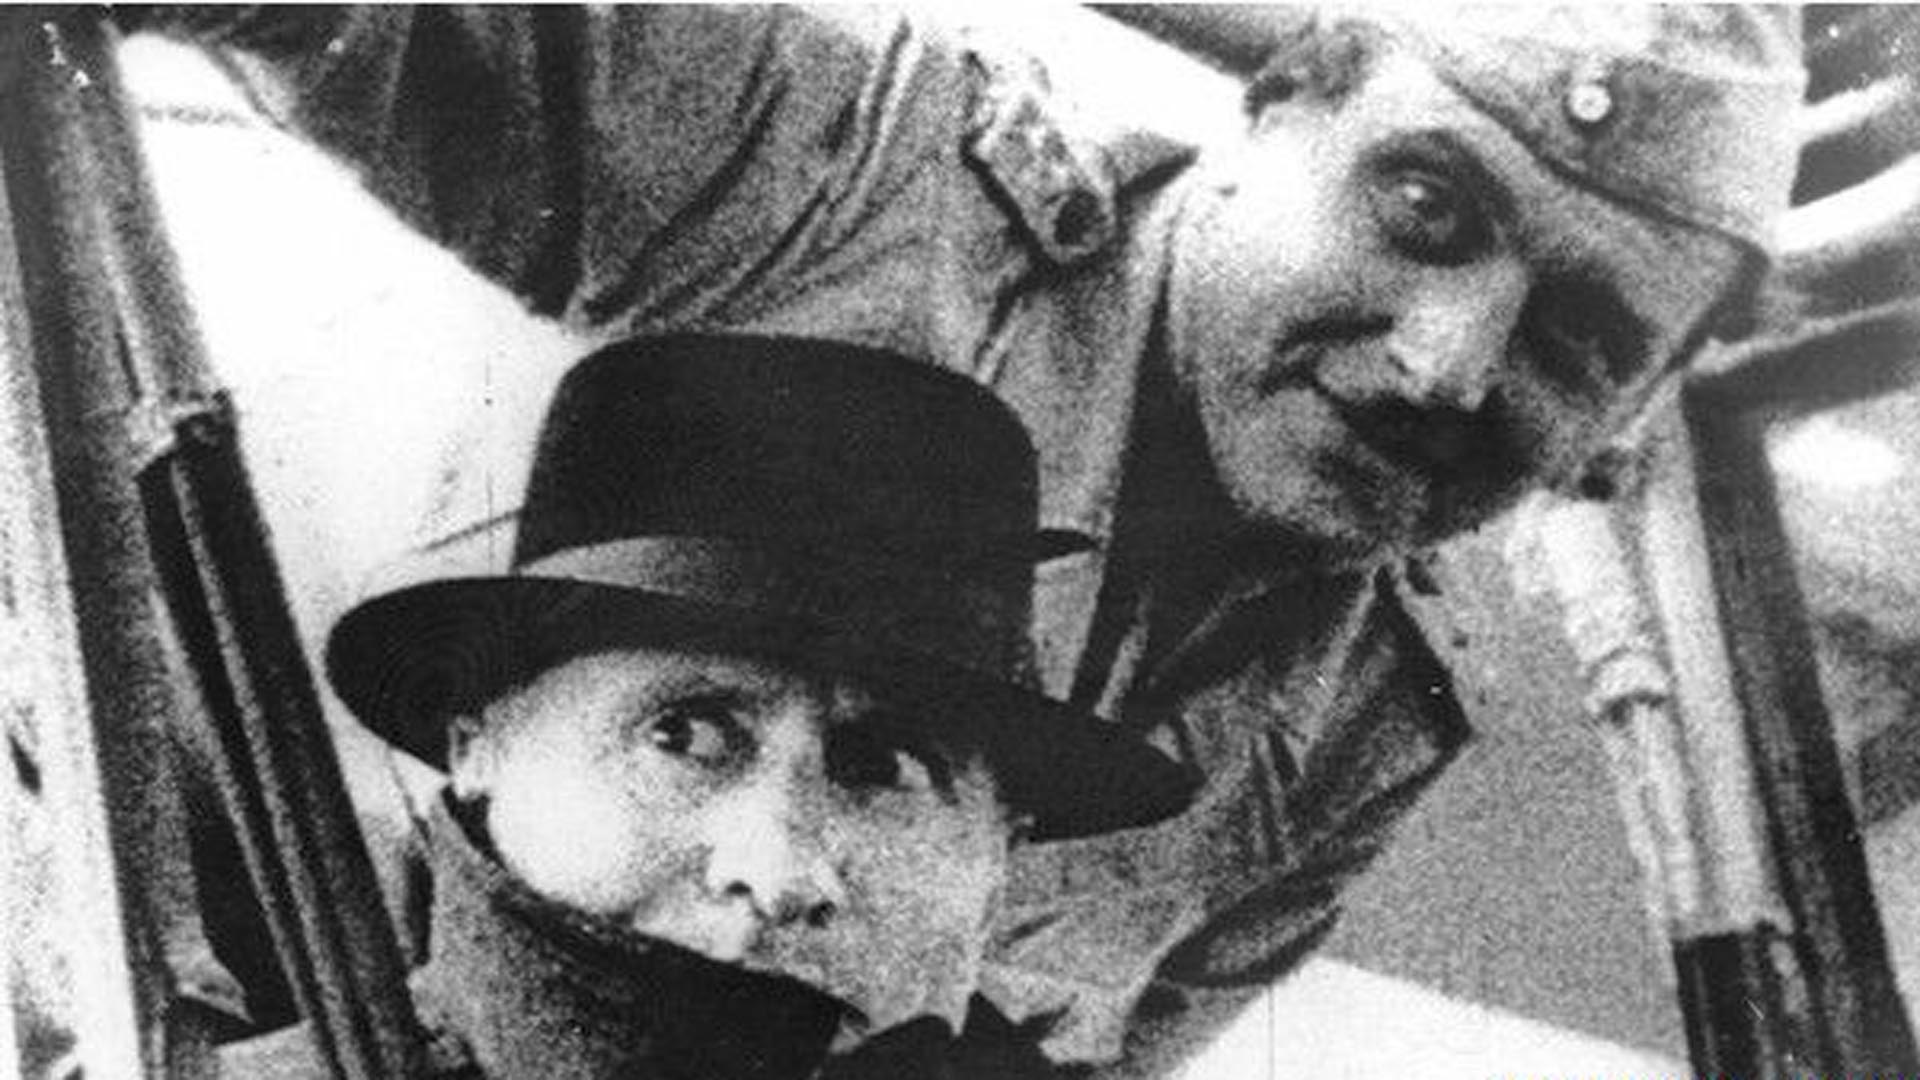 Skorzeny  en el rescate de Mussolini (Getty)